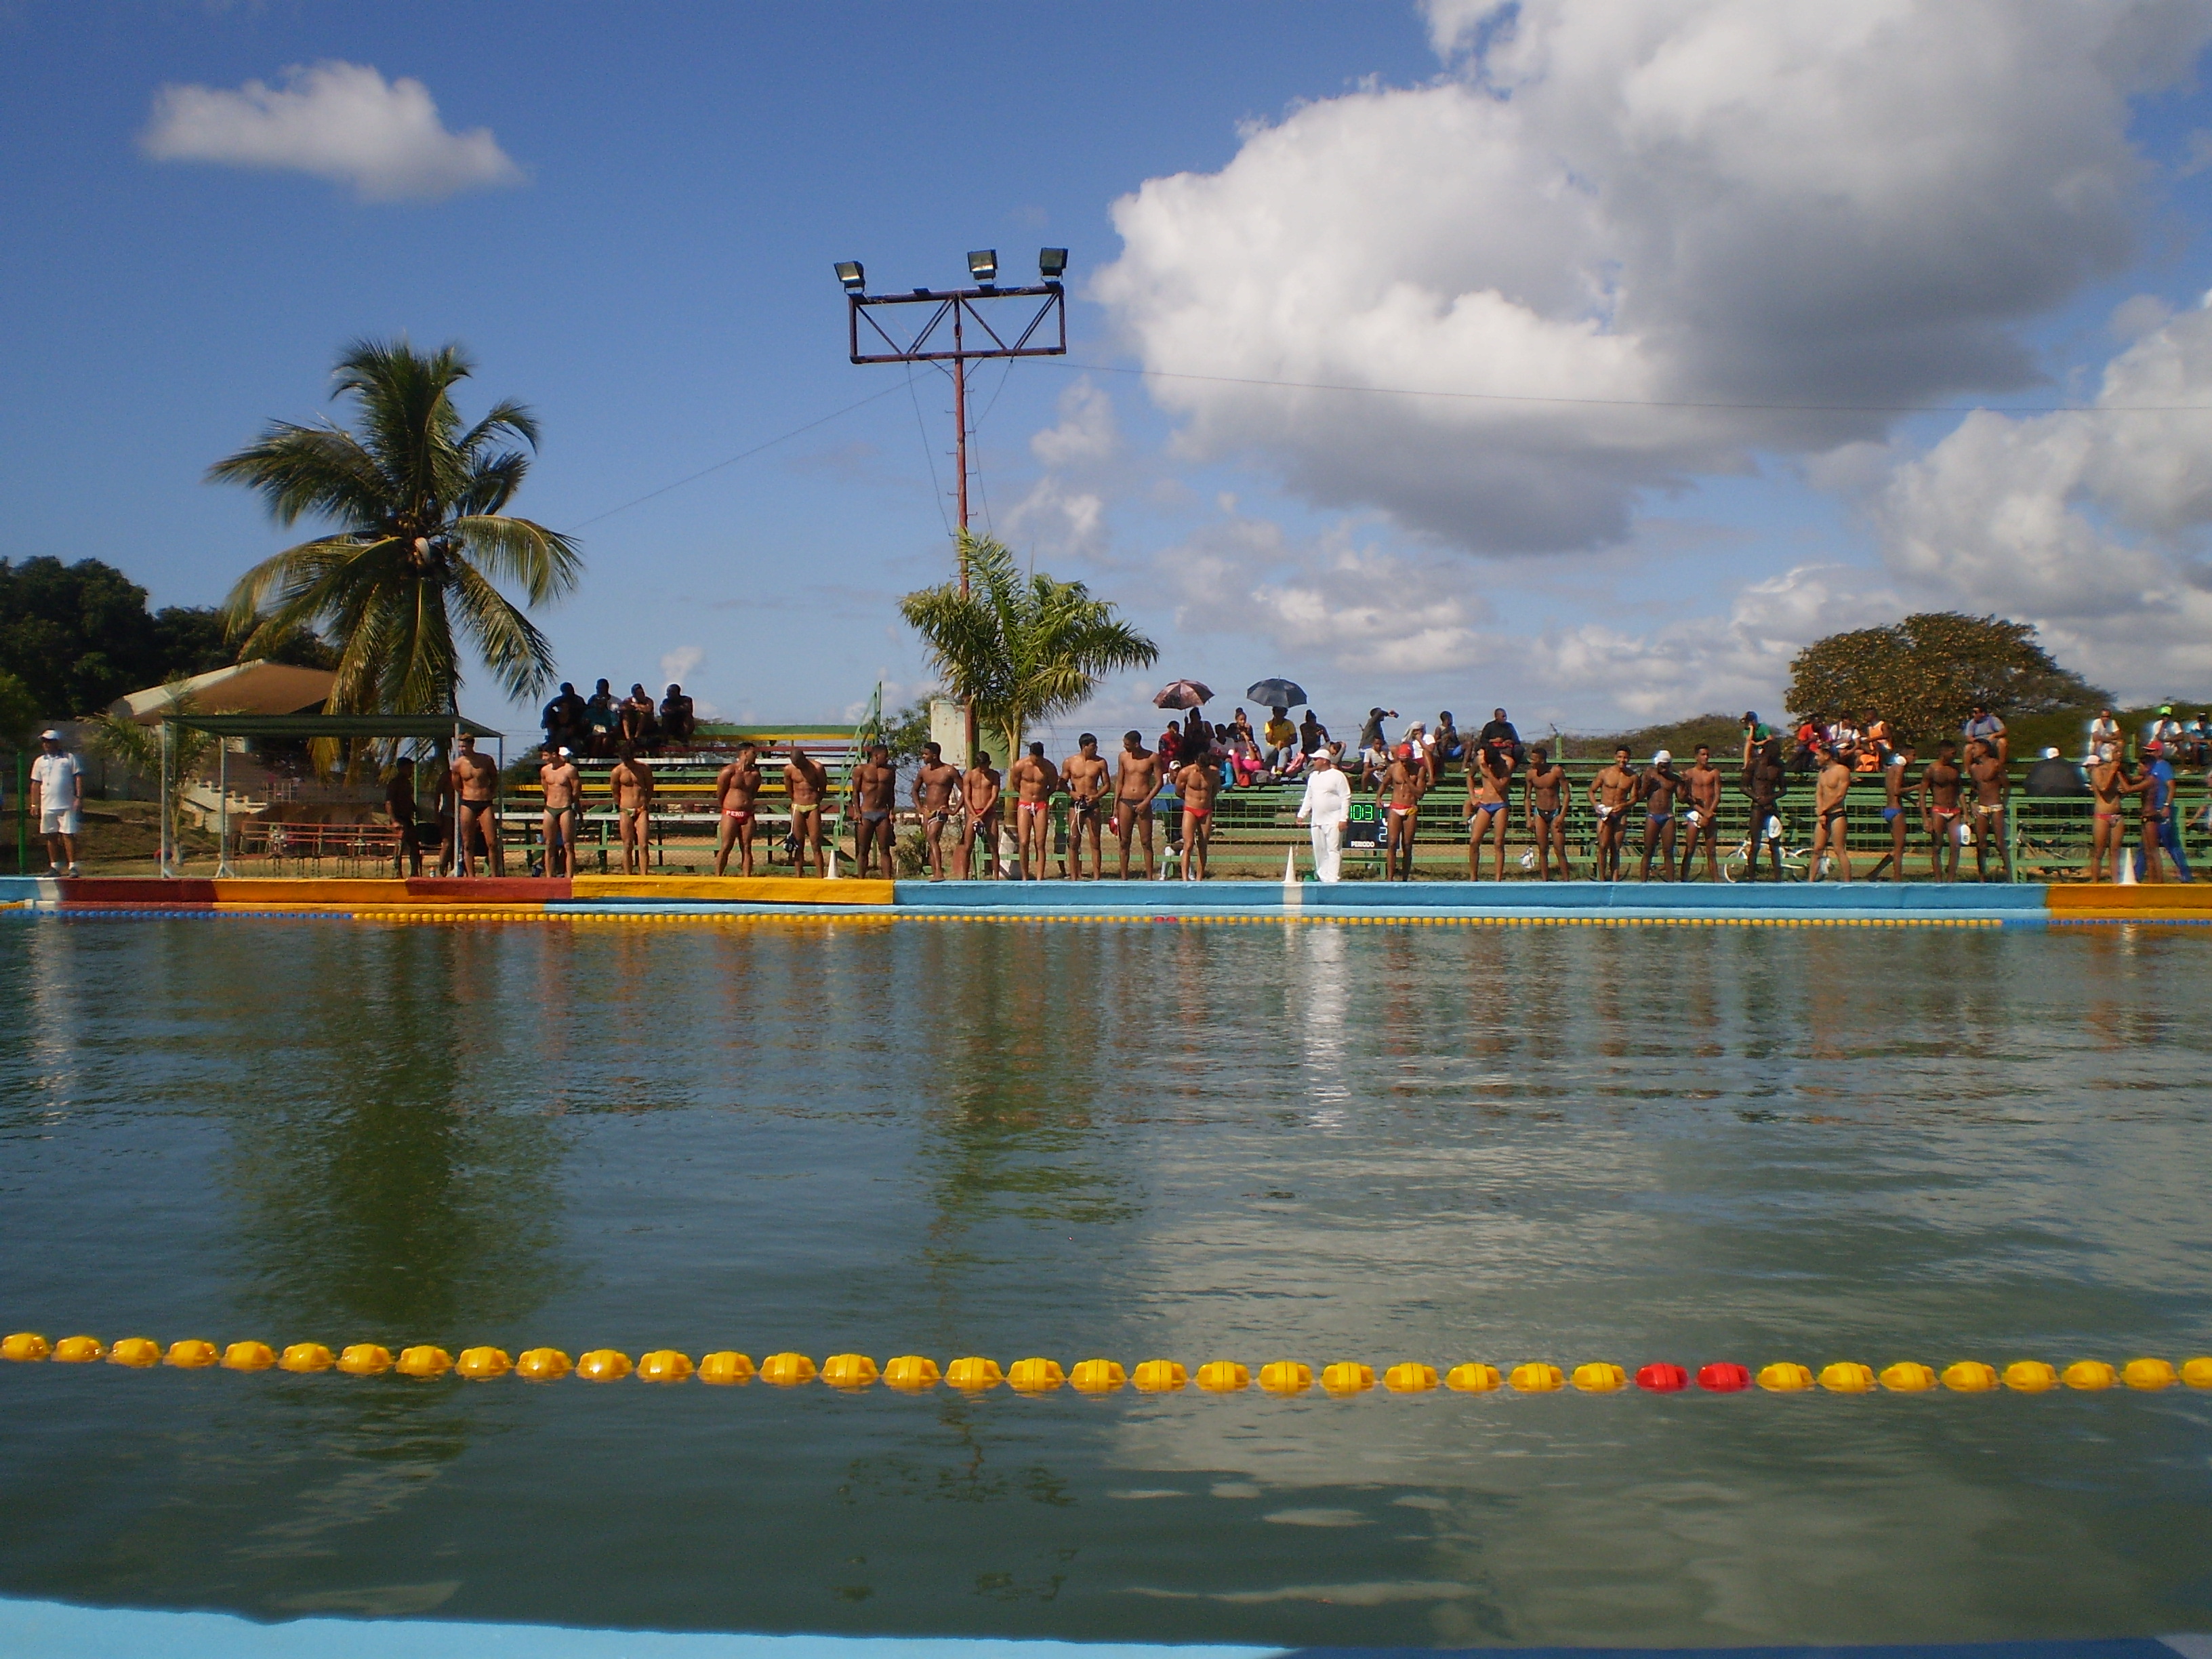 Terminado el Campeonato Nacional de polo acuático, la "Olímpica" cesó funciones hasta esta semana. /Foto: Darilys